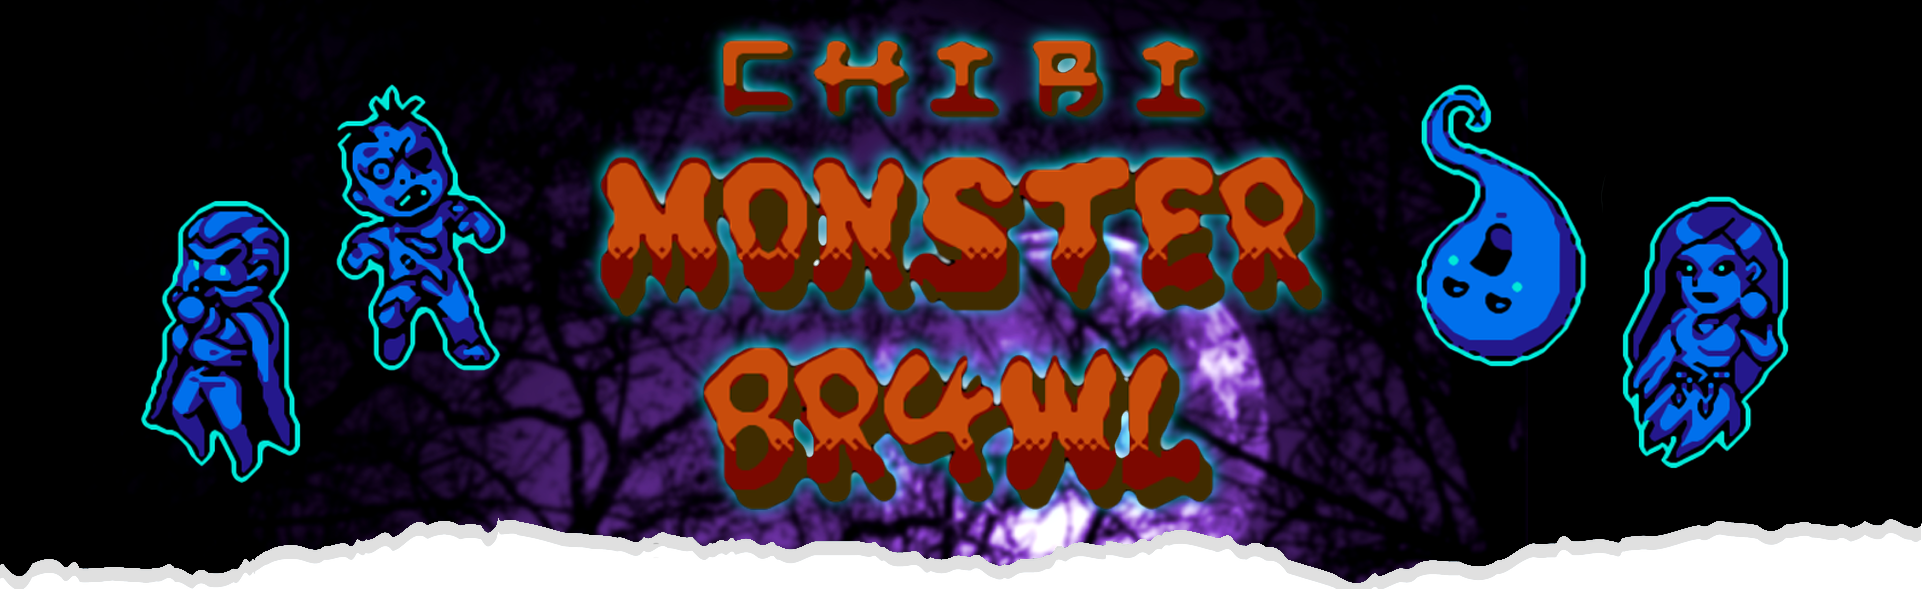 Chibi Monster Br4wl (NES demo)